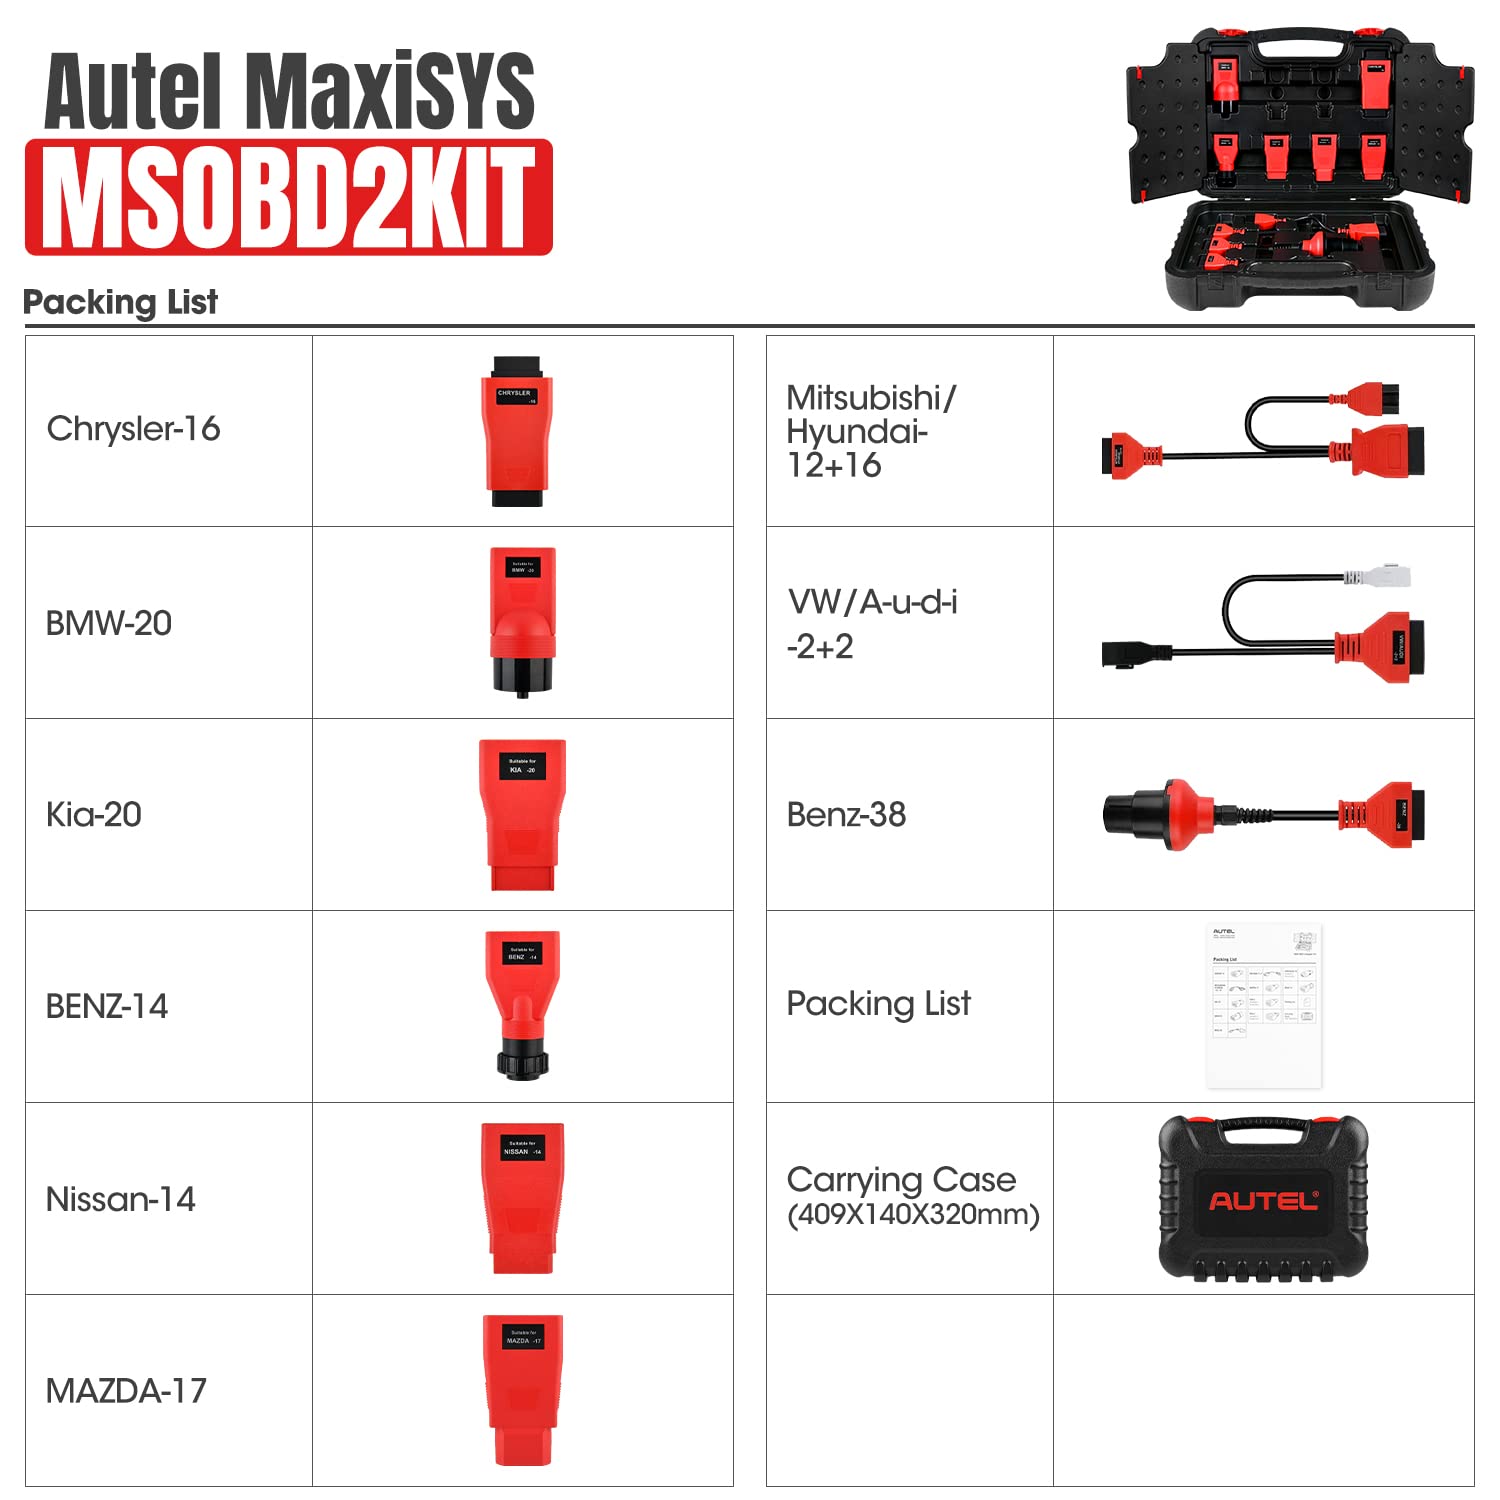 Autel MaxiSYS MSOBD2KIT Kit adaptateur non OBDII inclus : Nissan-14, Mitsubishi/Hyundai 12+16, Kia-20, BMW-20, Benz-38, VW/Audi-2+2, Mazda-17, Chrysler-16 et Benz -14 9 connecteur